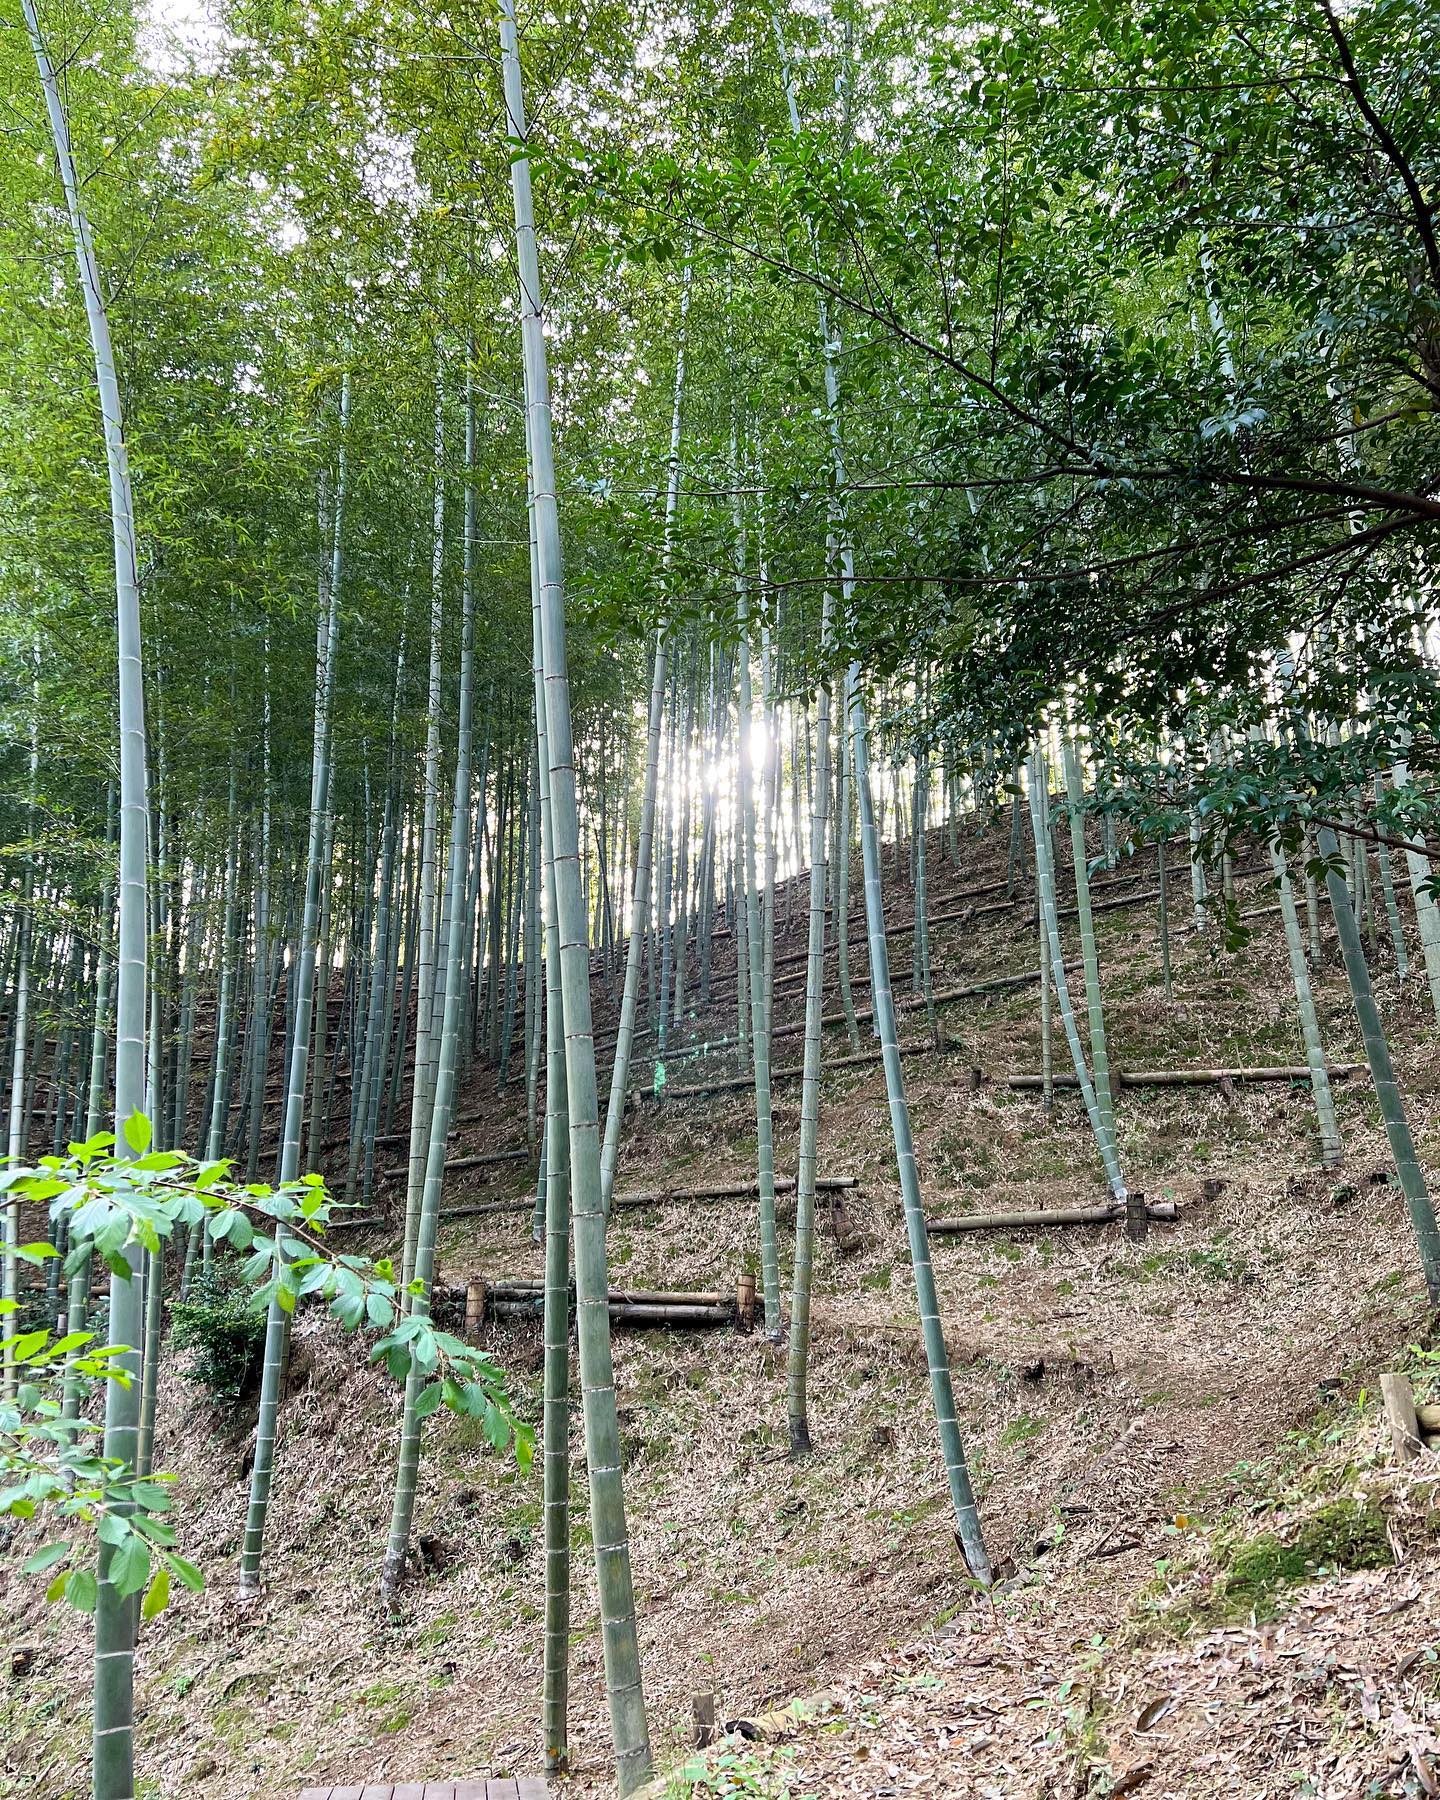 タケノコ一般注文も受付はじめました！ホームページやオンラインショップも随時更新してきますので良かったらご覧くださいませ昨日までずっと雨でしたが今週は晴れ️地面もいい感じにしっとり水を蓄えてます春休み突入の子どもたちも戦力になるか！？#たけのこ #タケノコ #筍 #竹林 #竹 #bamboo #里山 #自然 #自然好きな人と繋がりたい #徳島 #阿南 #阿波たけのこ農園 #筍姫